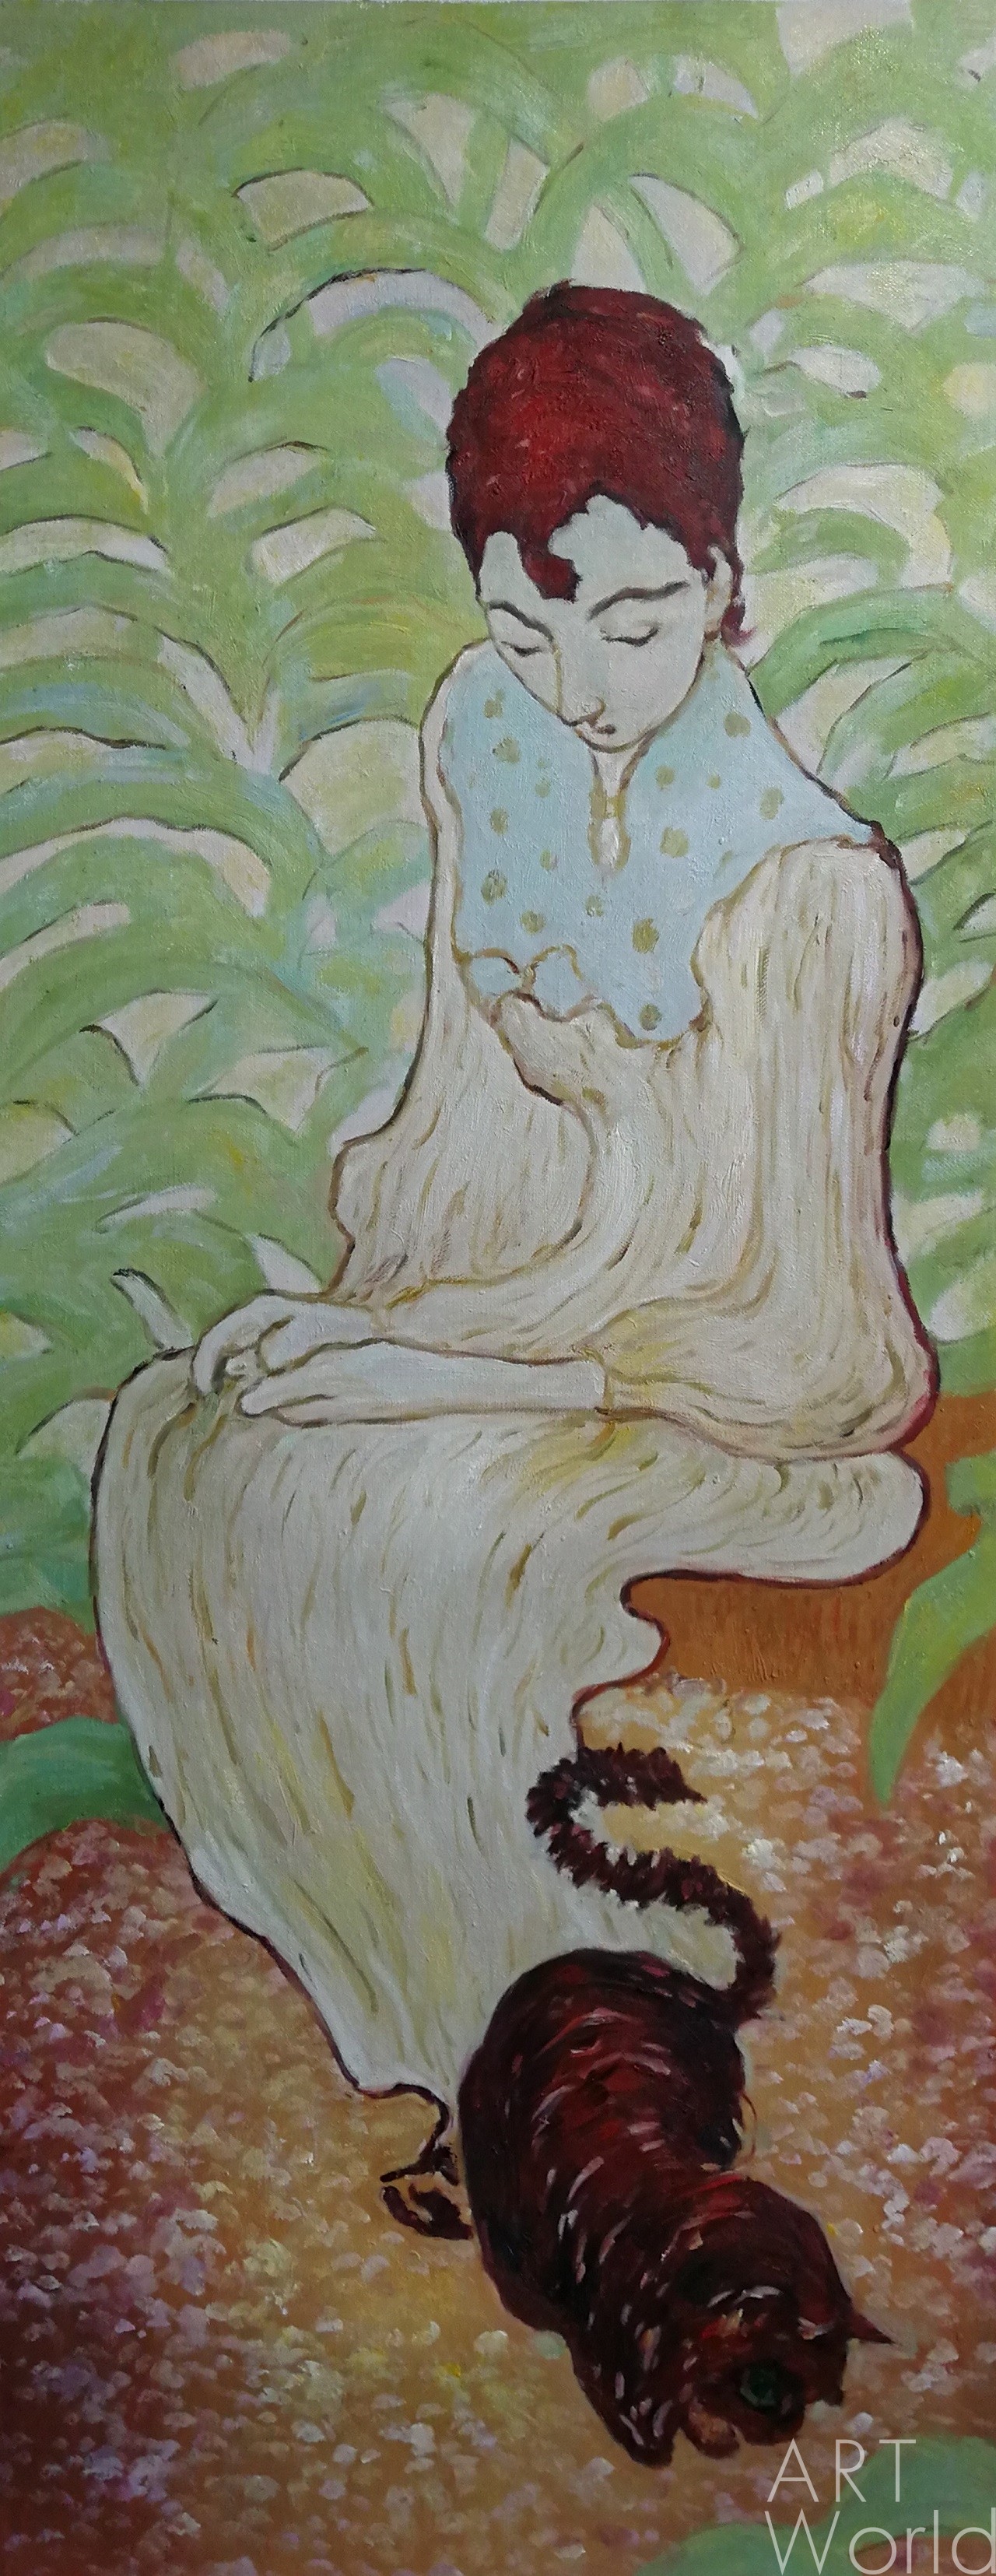 Картина Копия картины Пьера Боннара Сидящая женщина с кошкой, художник С.  Камский 40x100 SK181203 купить в Москве